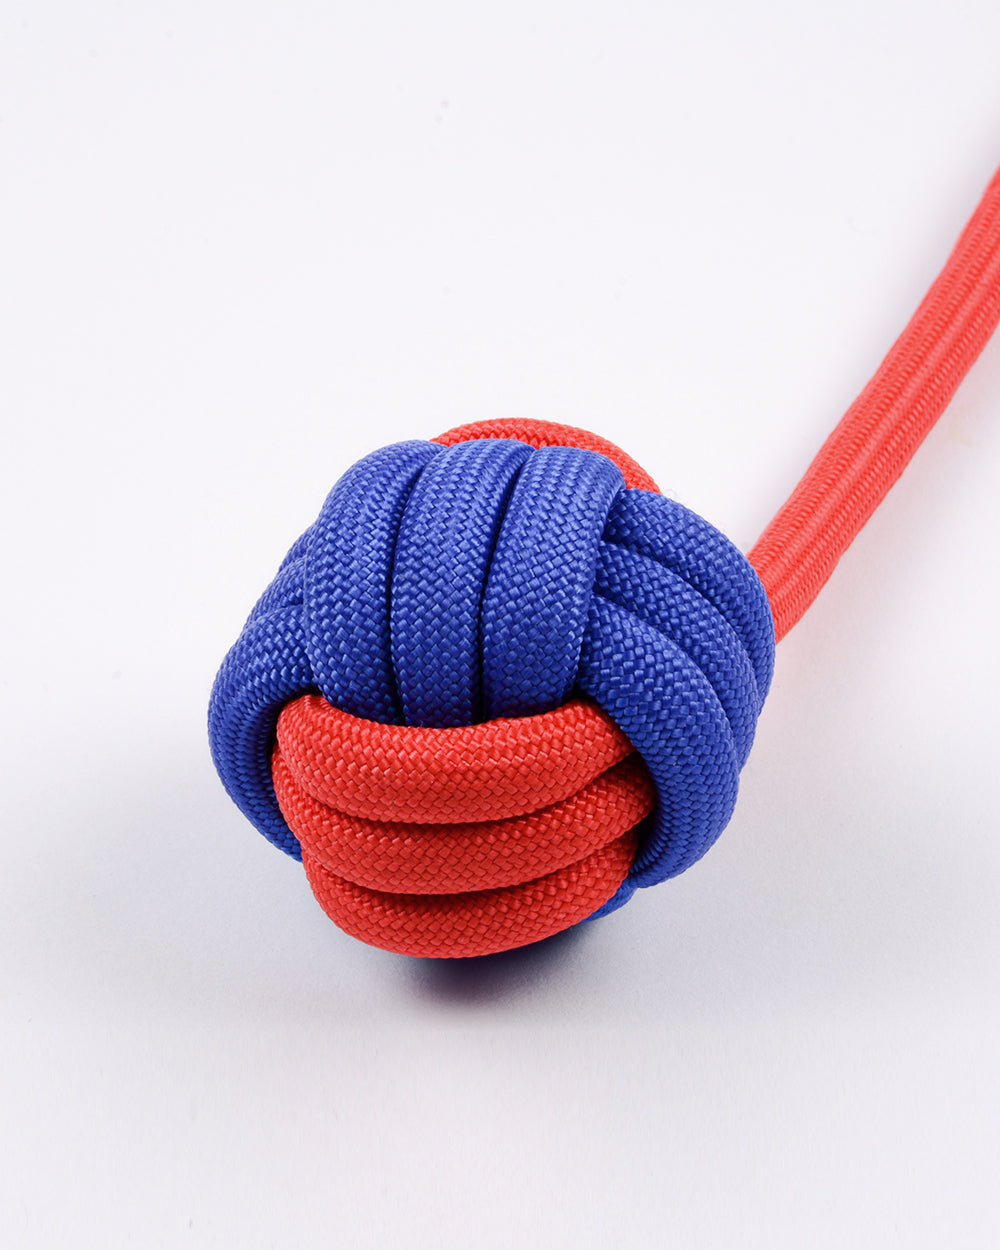 尼龍繩和球拖輪玩具帶環 - 紅藍